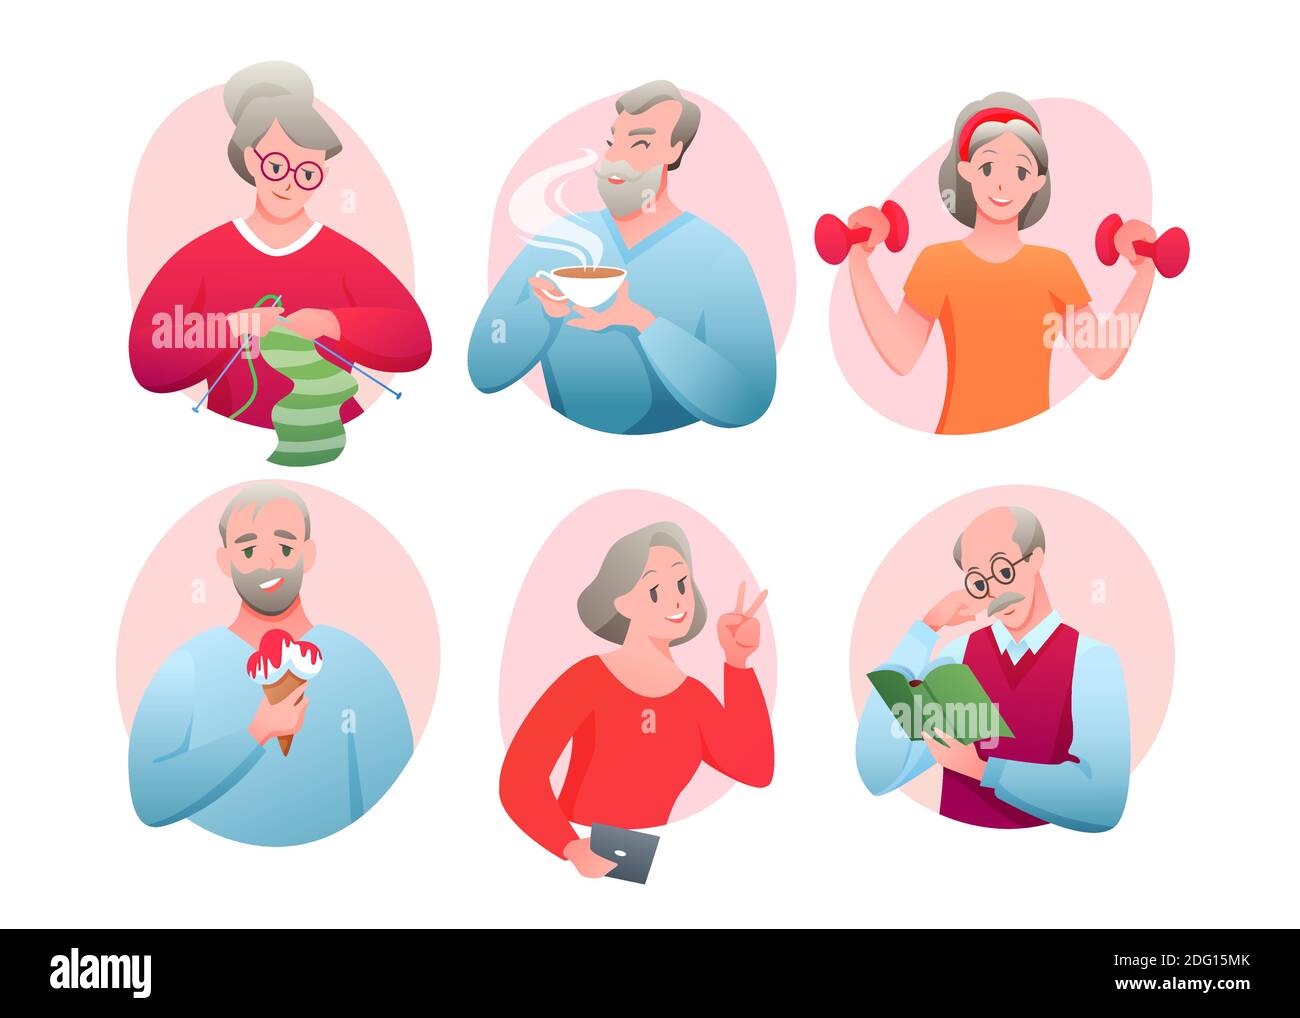 Cartoon Runde Avatare der aktiven alten Charakter tun Sport-Übung, Stricken, Networking, Eis essen, Tee trinken, Buch lesen. Ältere Menschen Stock Vektor